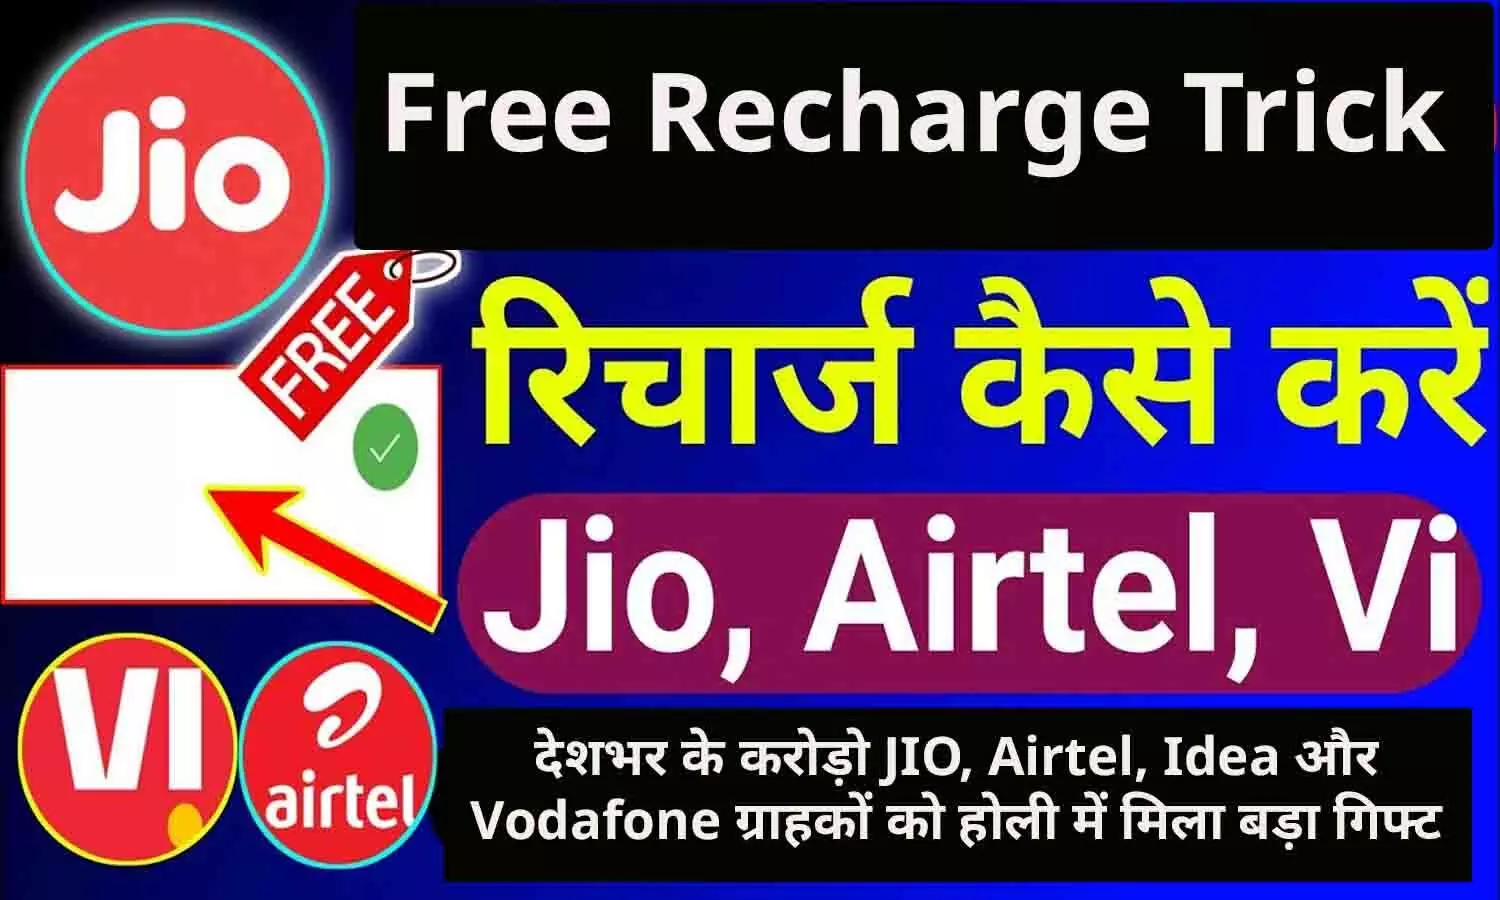 Free Mein Recharge Kaise Karen: देशभर के करोड़ो JIO, Airtel, Idea और Vodafone ग्राहकों को होली में मिला बड़ा गिफ्ट, सभी को मिल रहा फ्री में मोबाइल रिचार्ज करने का मौका?